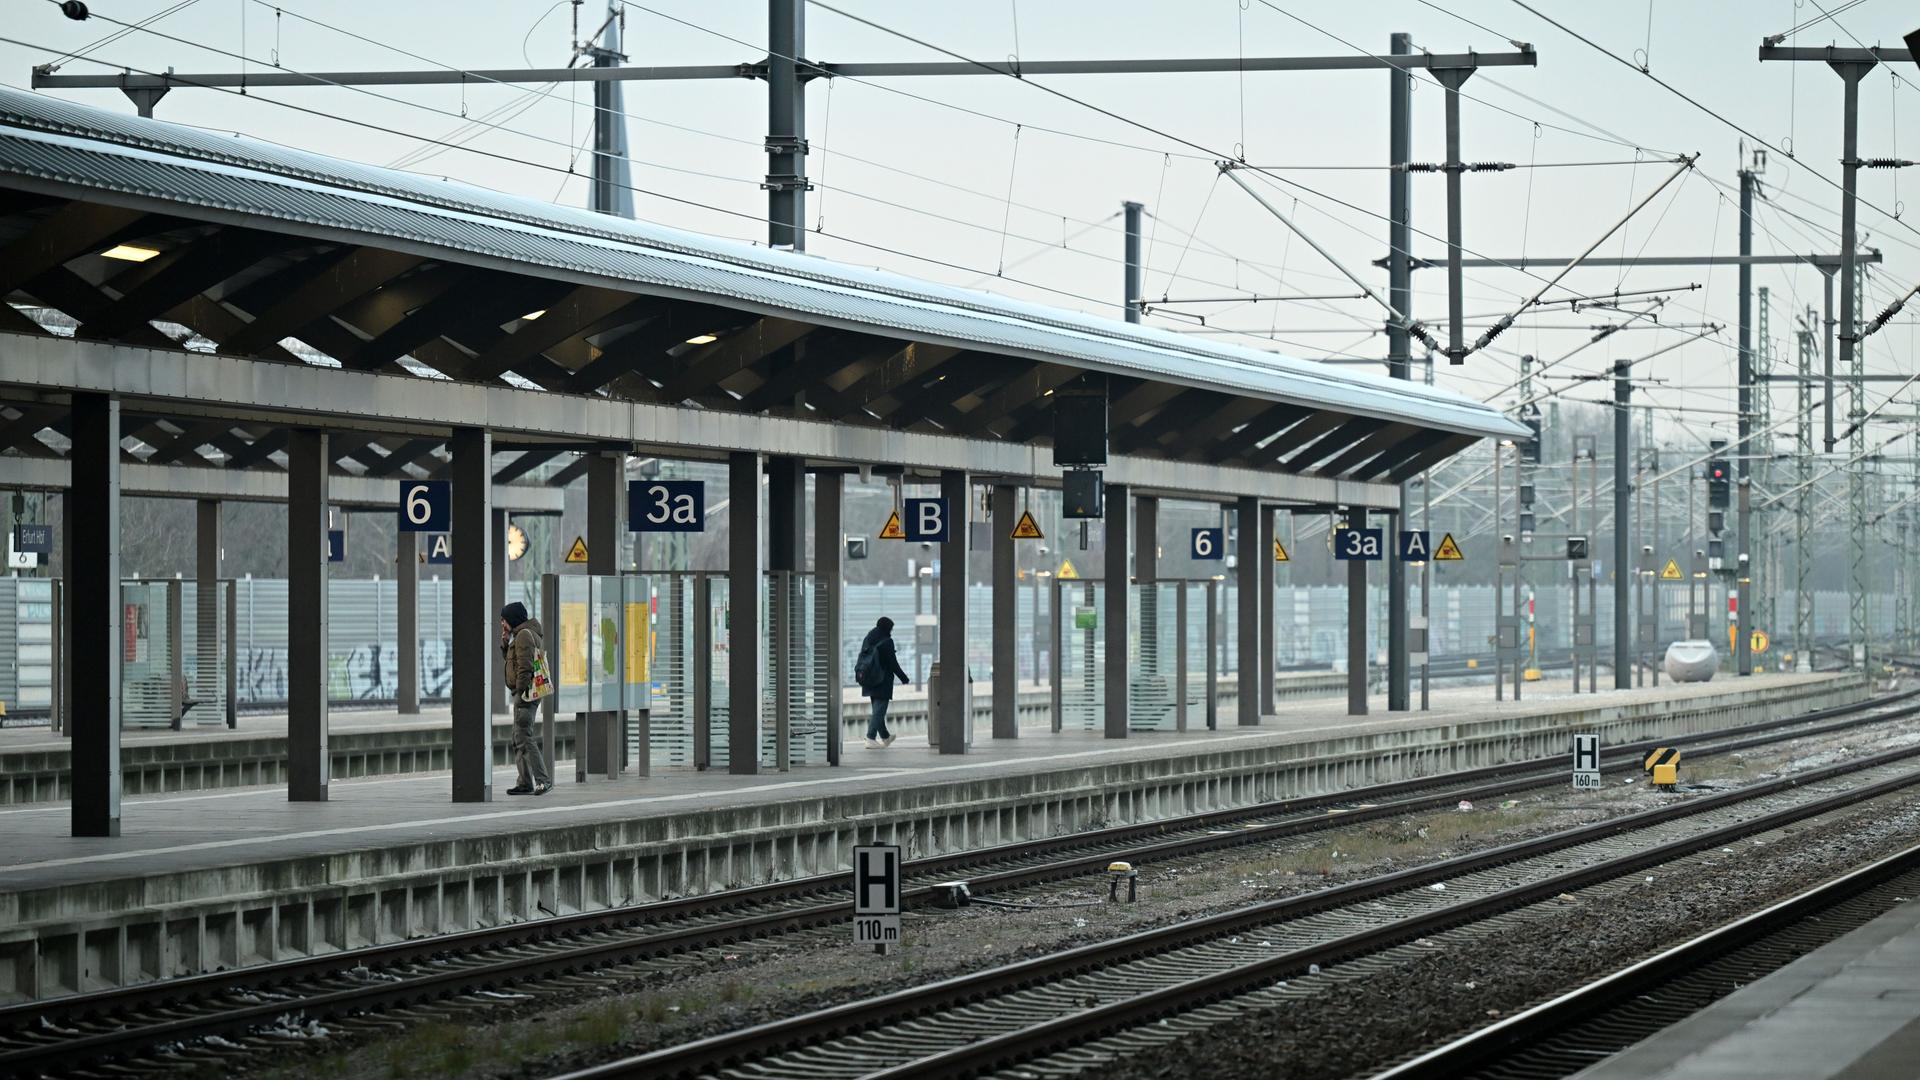 Thüringen, Erfurt: Fast menschenleer ist ein Bahnsteig im Erfurter Hauptbahnhof.